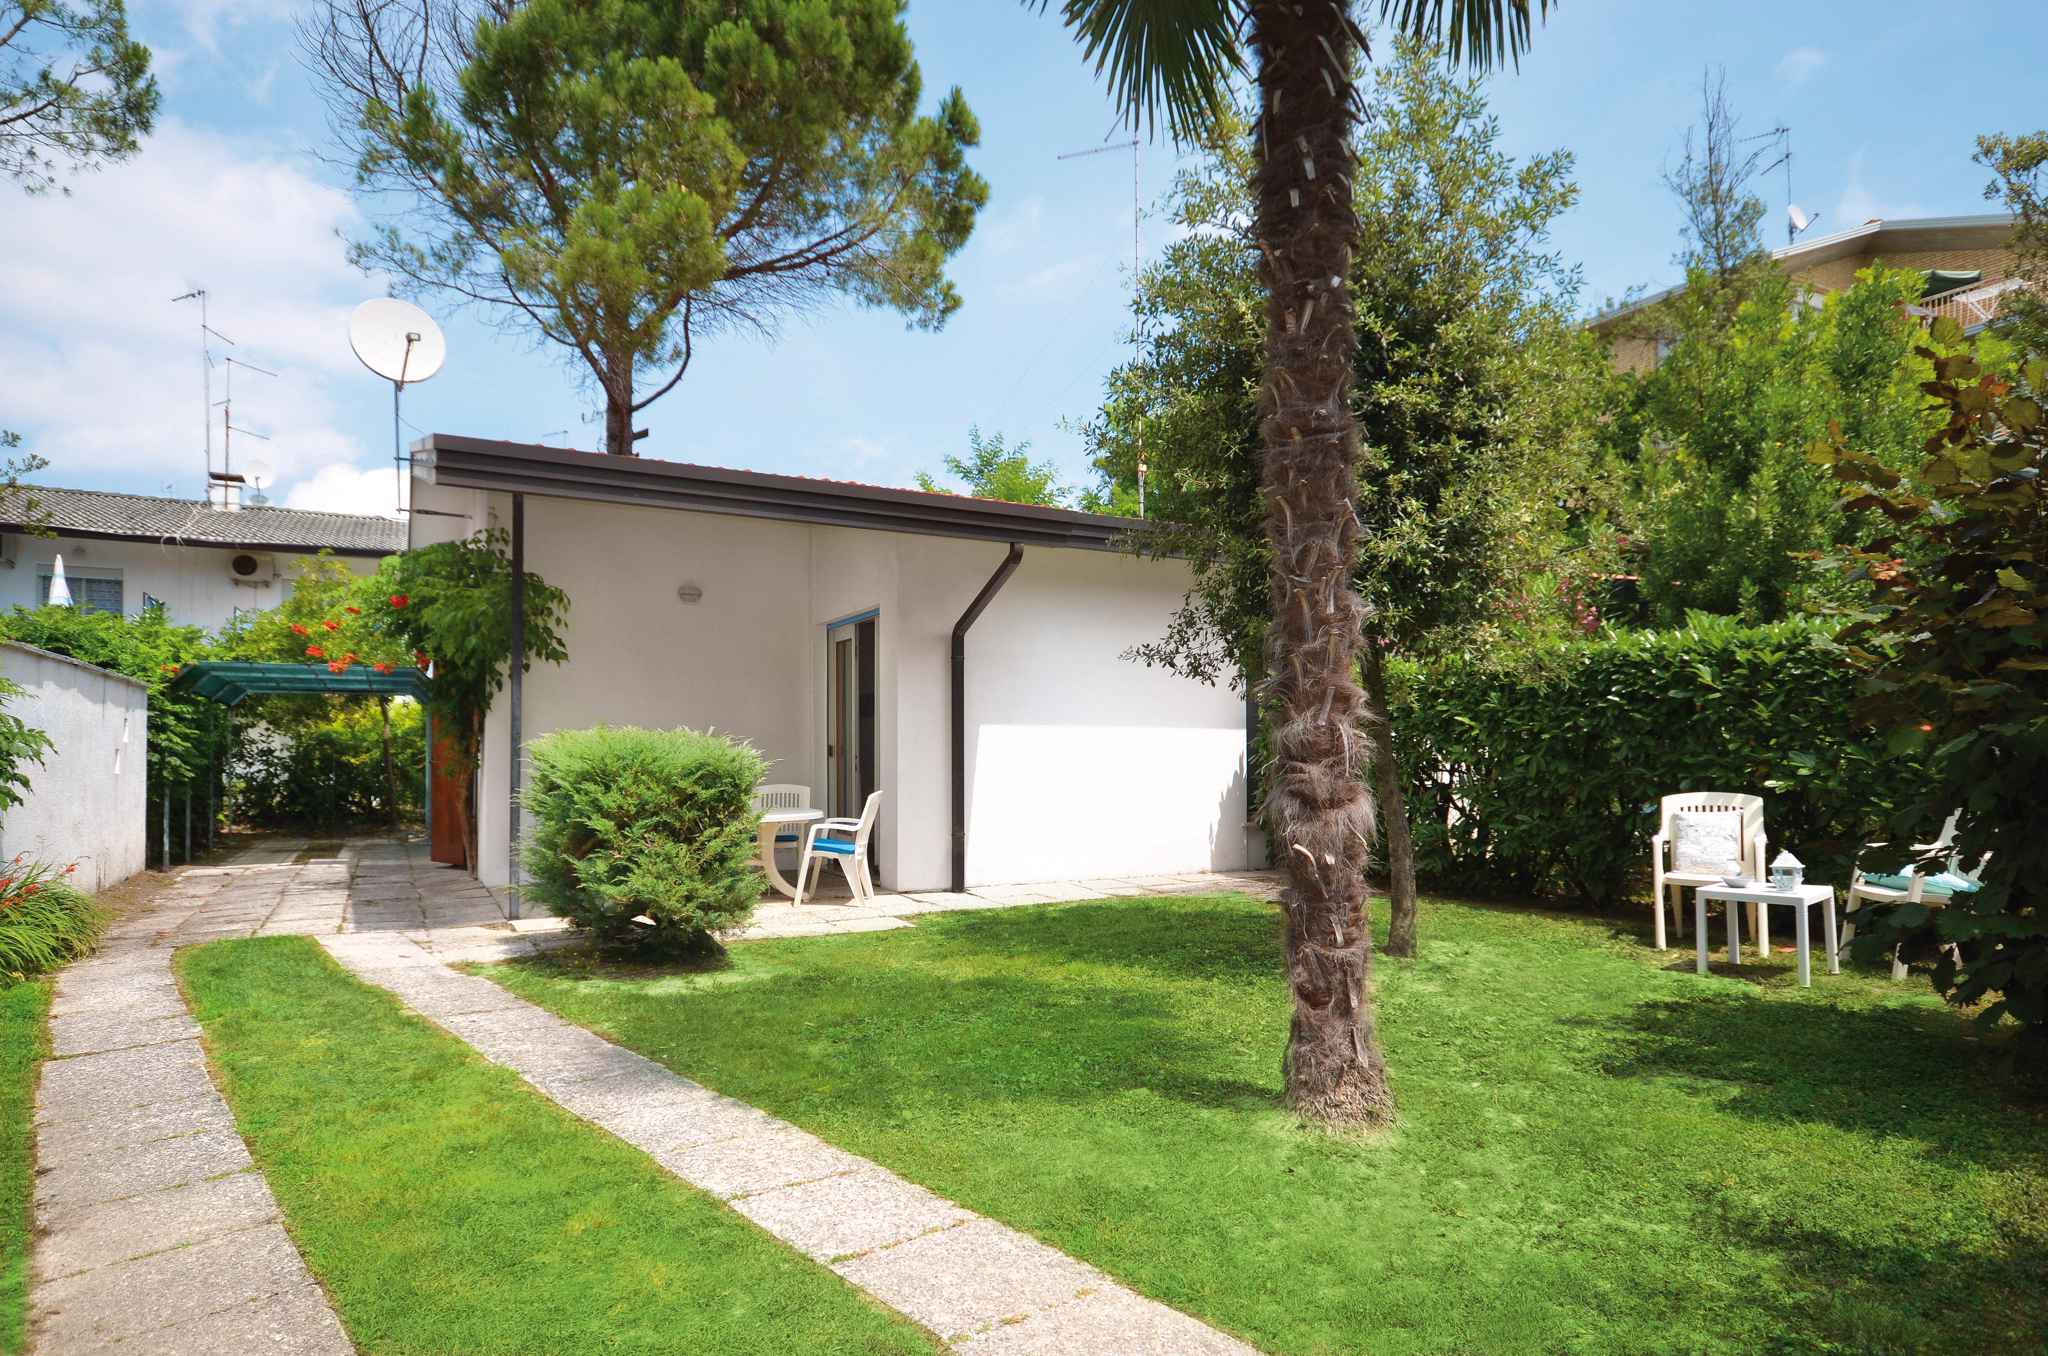 Villa in ruhiger Lage mit Garten inkl. Strandservi Ferienhaus in Europa